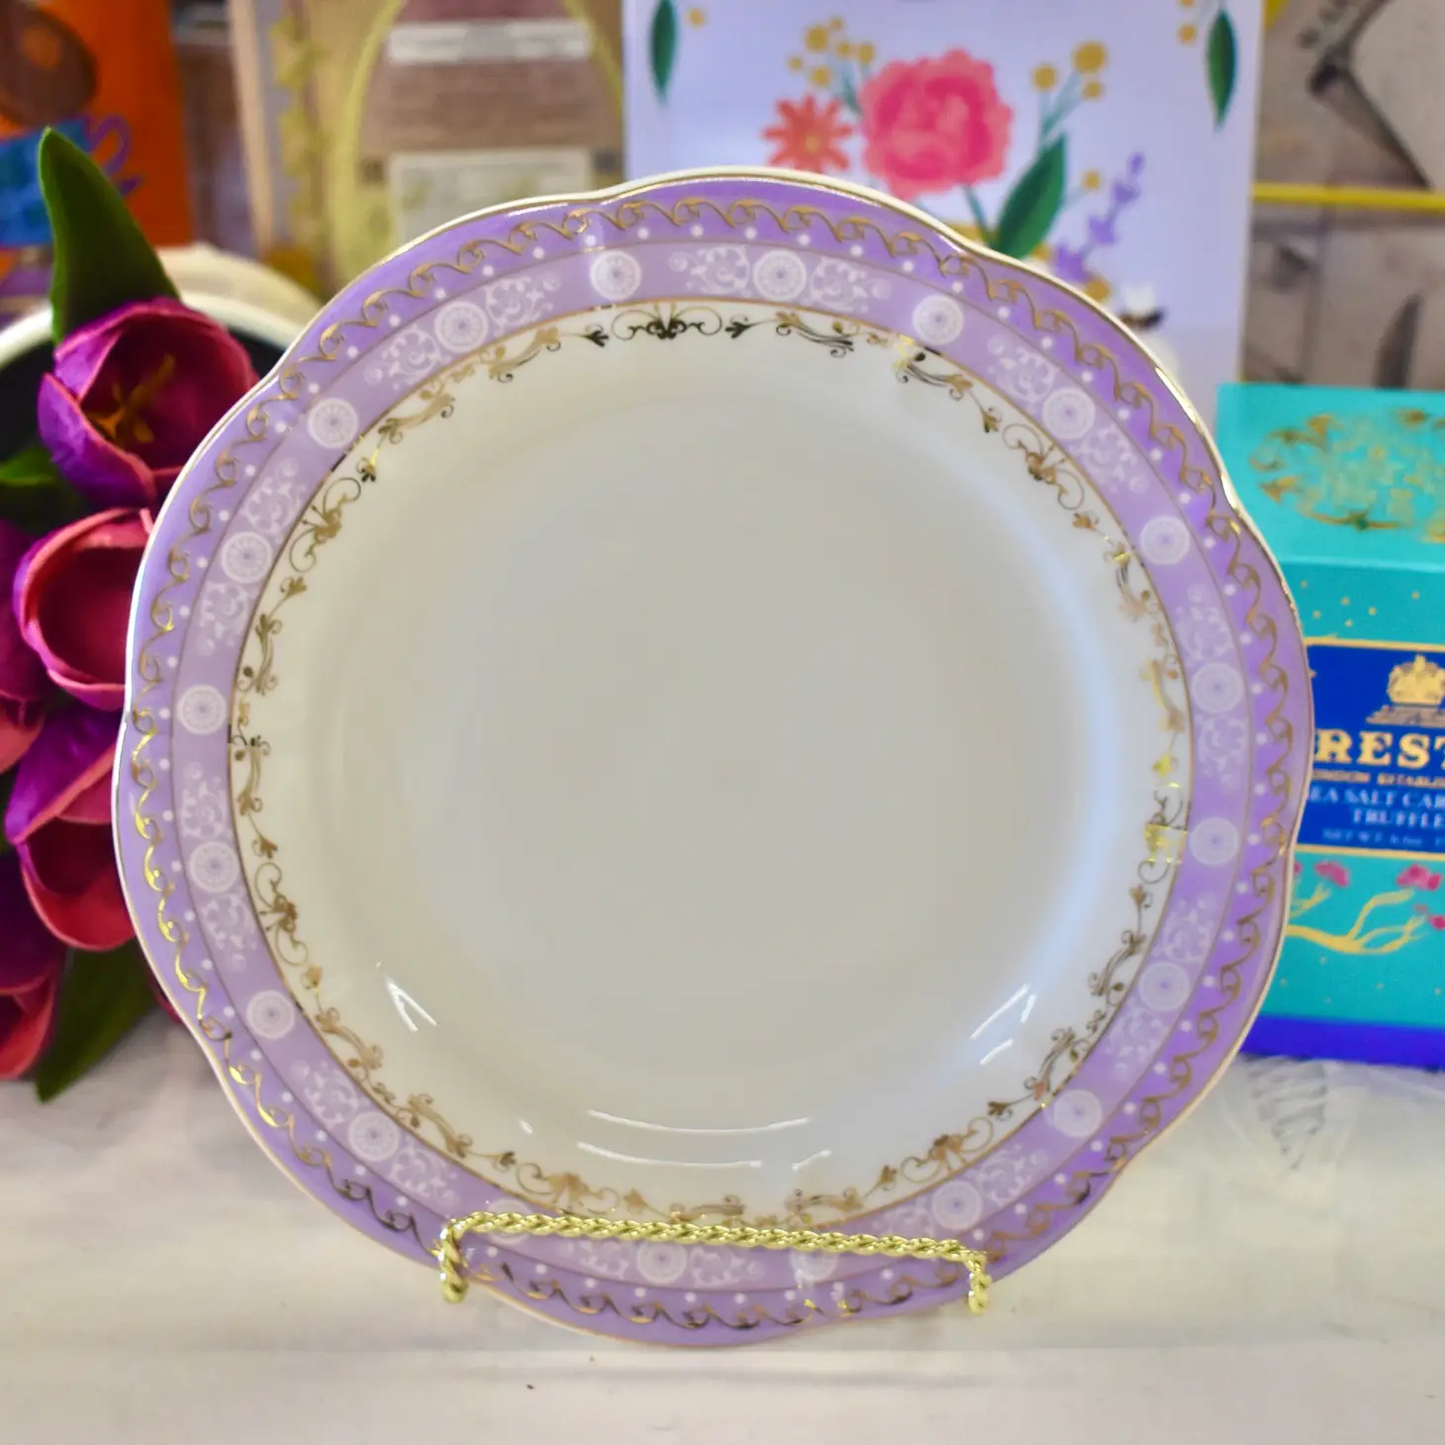 Regency Vintage Lavender Gold Lace Salad Plate